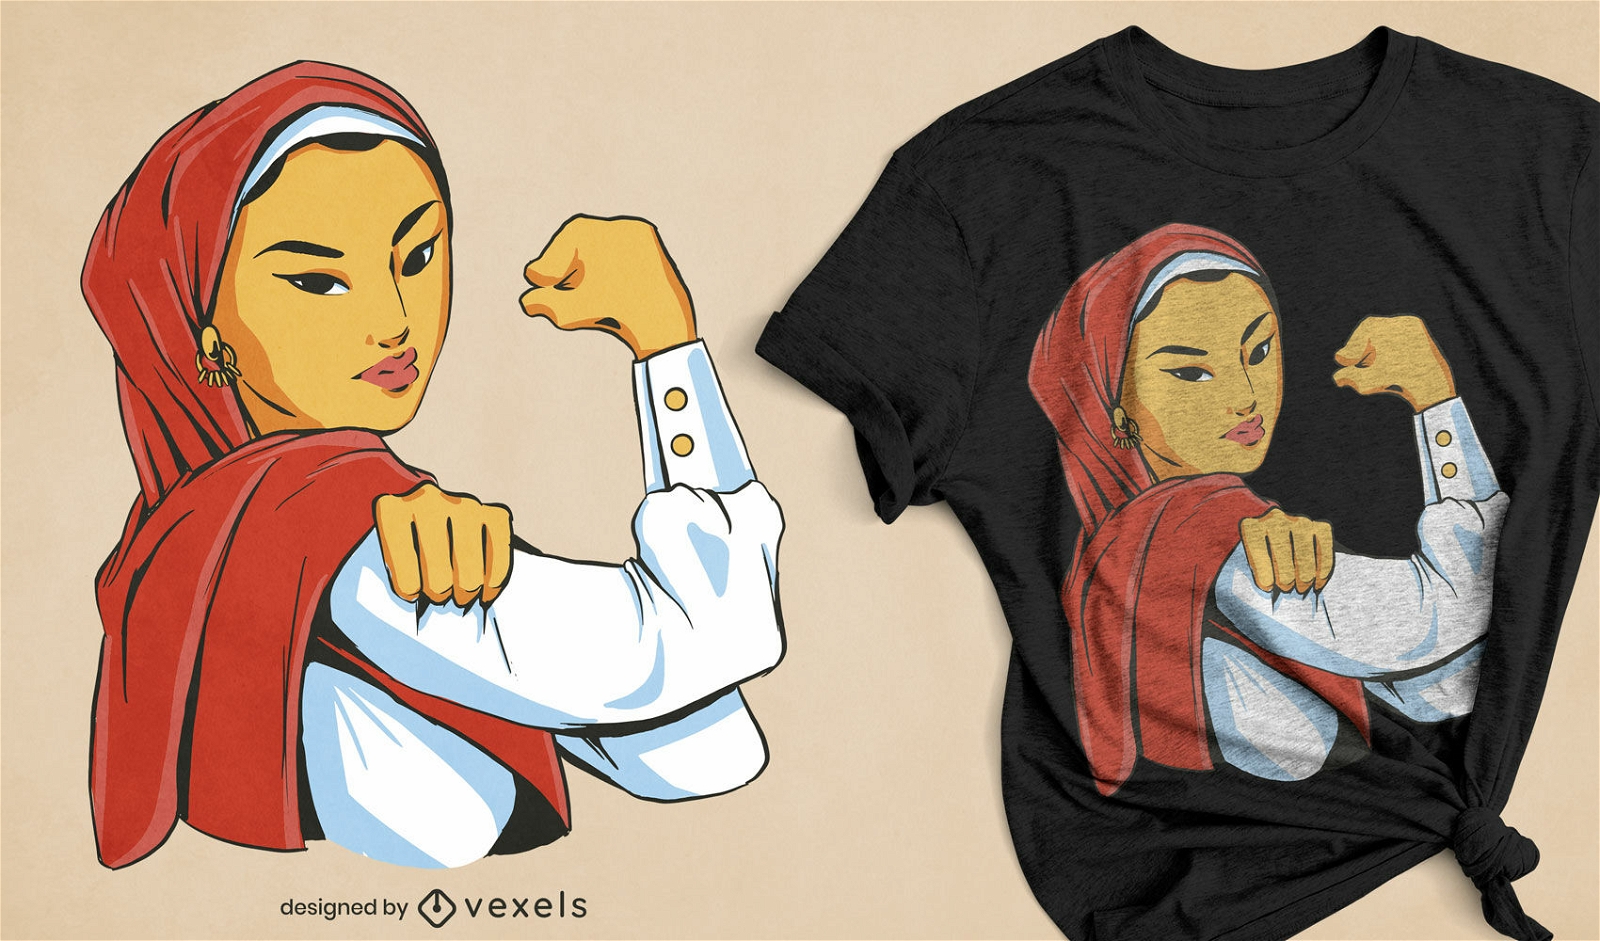 Strong Muslim woman feminist t-shirt design